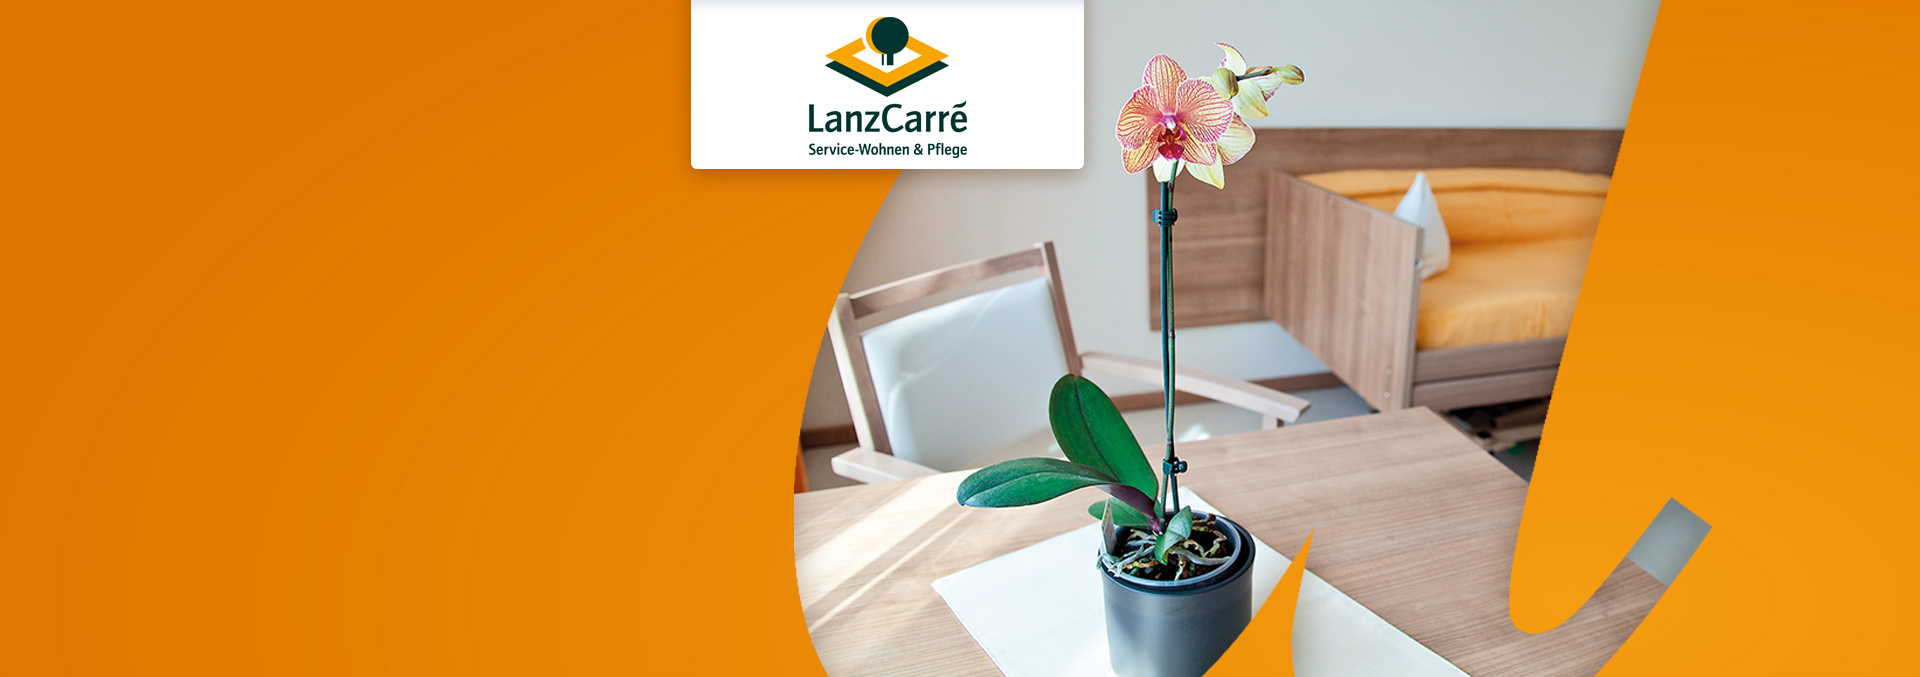 Service-Wohnen und Pflege LanzCarré Pflegezimmer, eine Pflanze steht auf einer kleinen Decke auf einem Holztisch